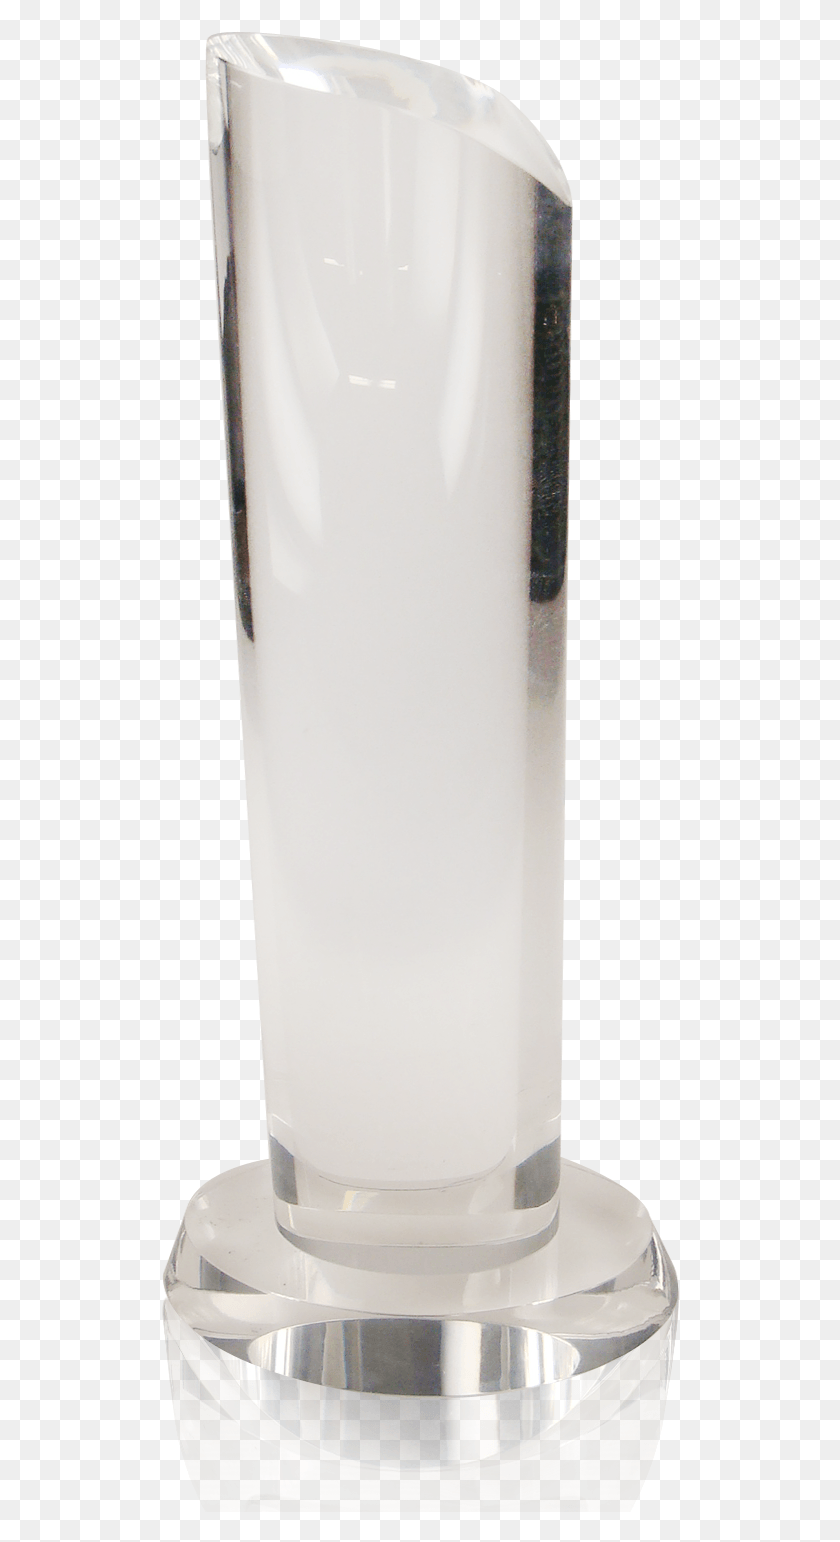 518x1482 Холодильник Crystal Pillar, Бутылка, Молоко, Напиток Hd Png Скачать